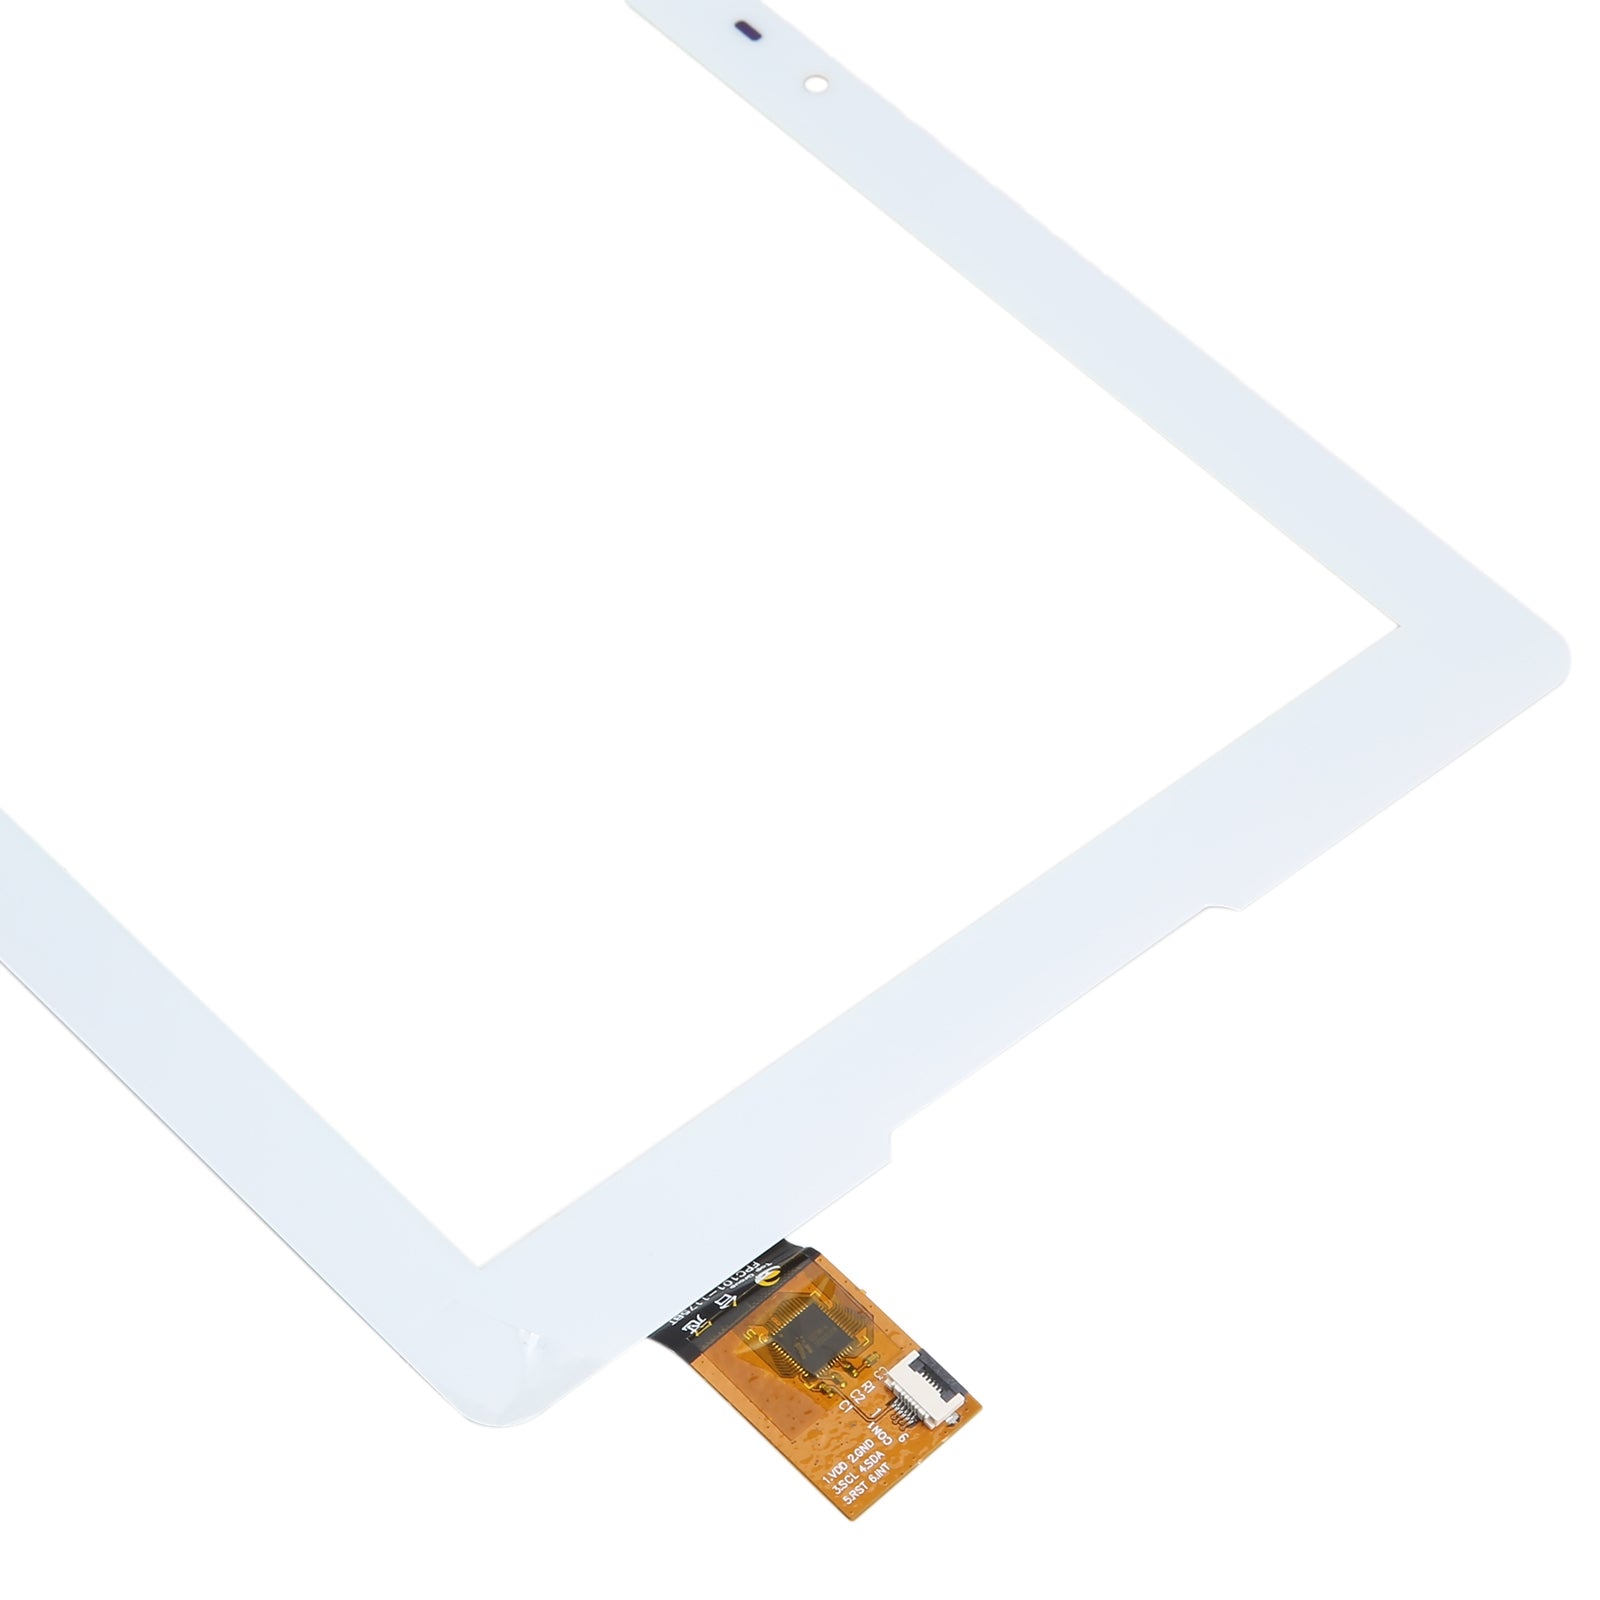 Pantalla Tactil Digitalizador Acer B3-A32 Blanco